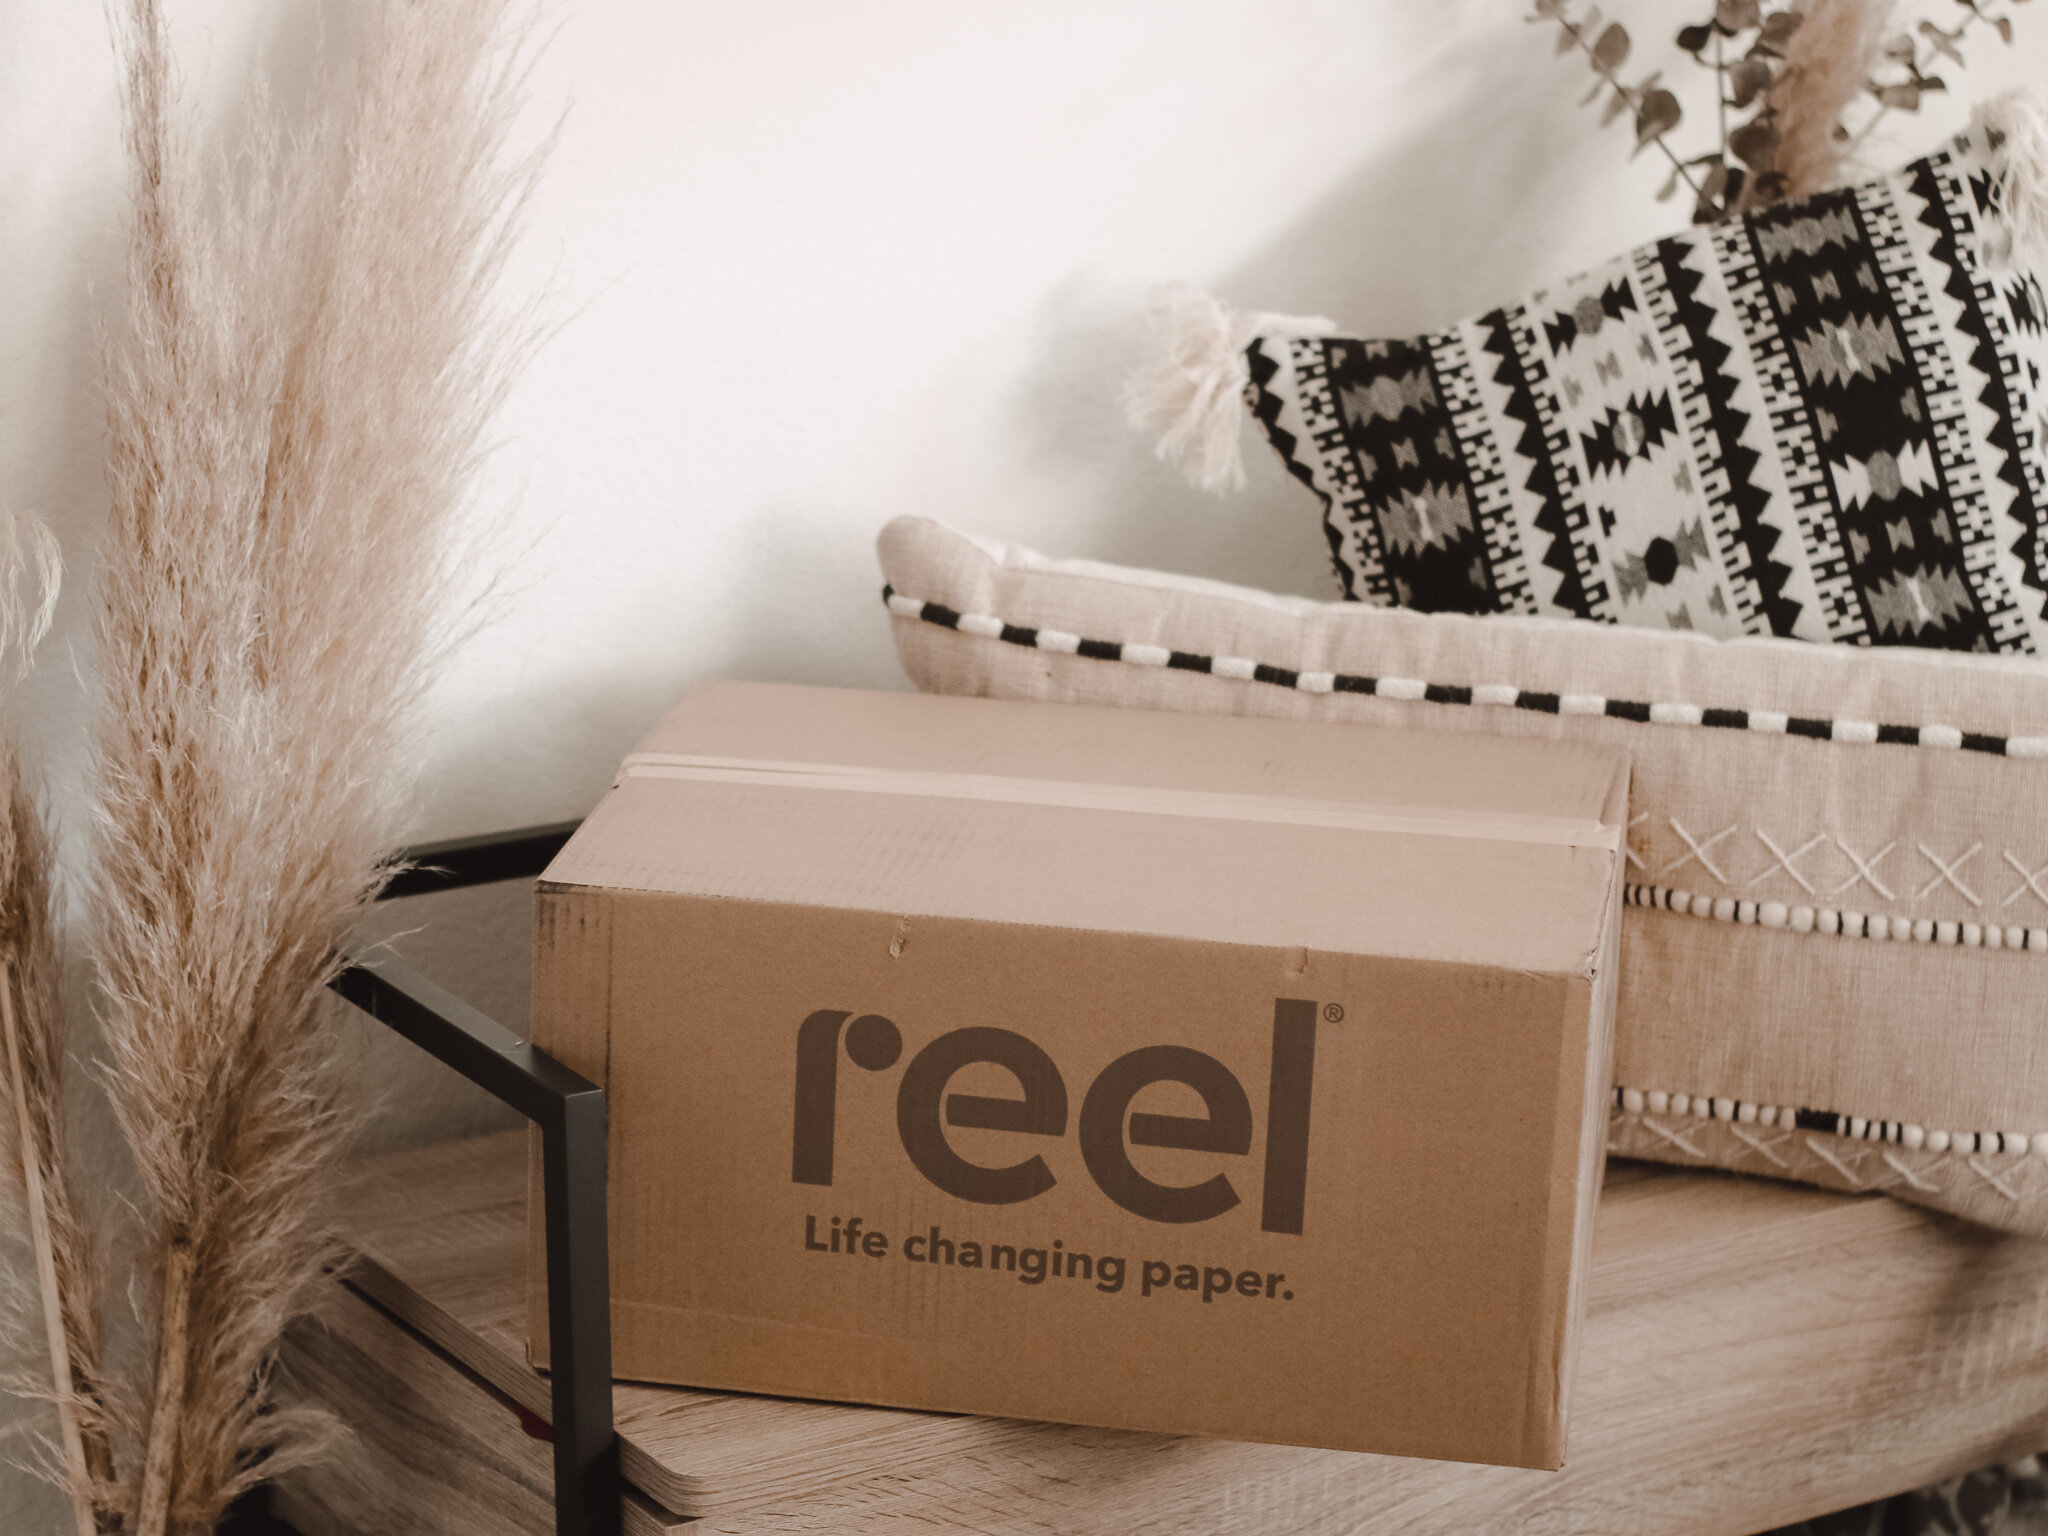 Reel Toilet Paper Delivery - Amanda N Hammond.jpg